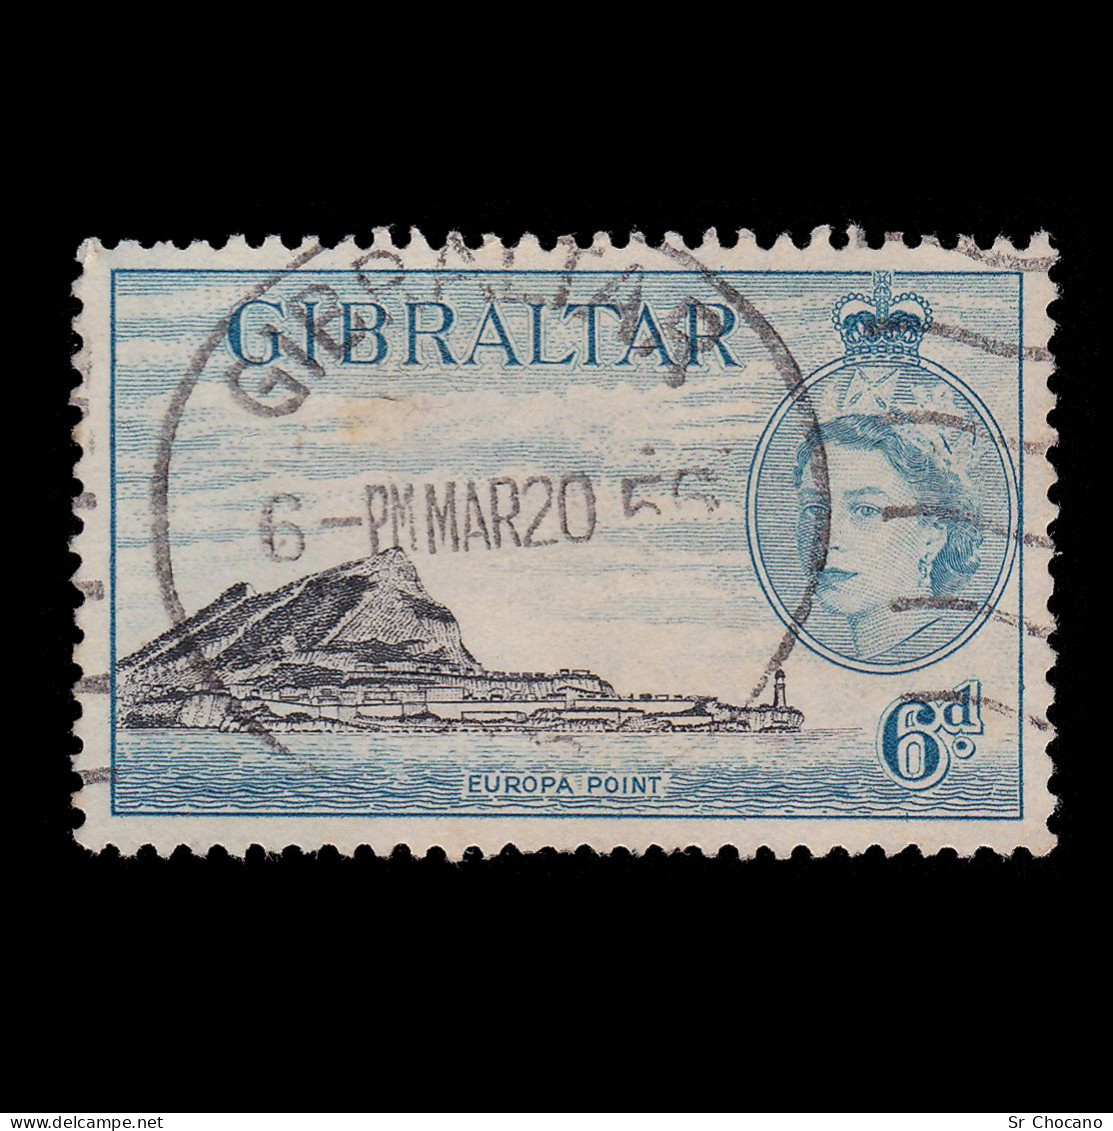 GIBRALTAR STAMP.1953.6p EUROPA POINT.SG.153.Used. - Gibraltar